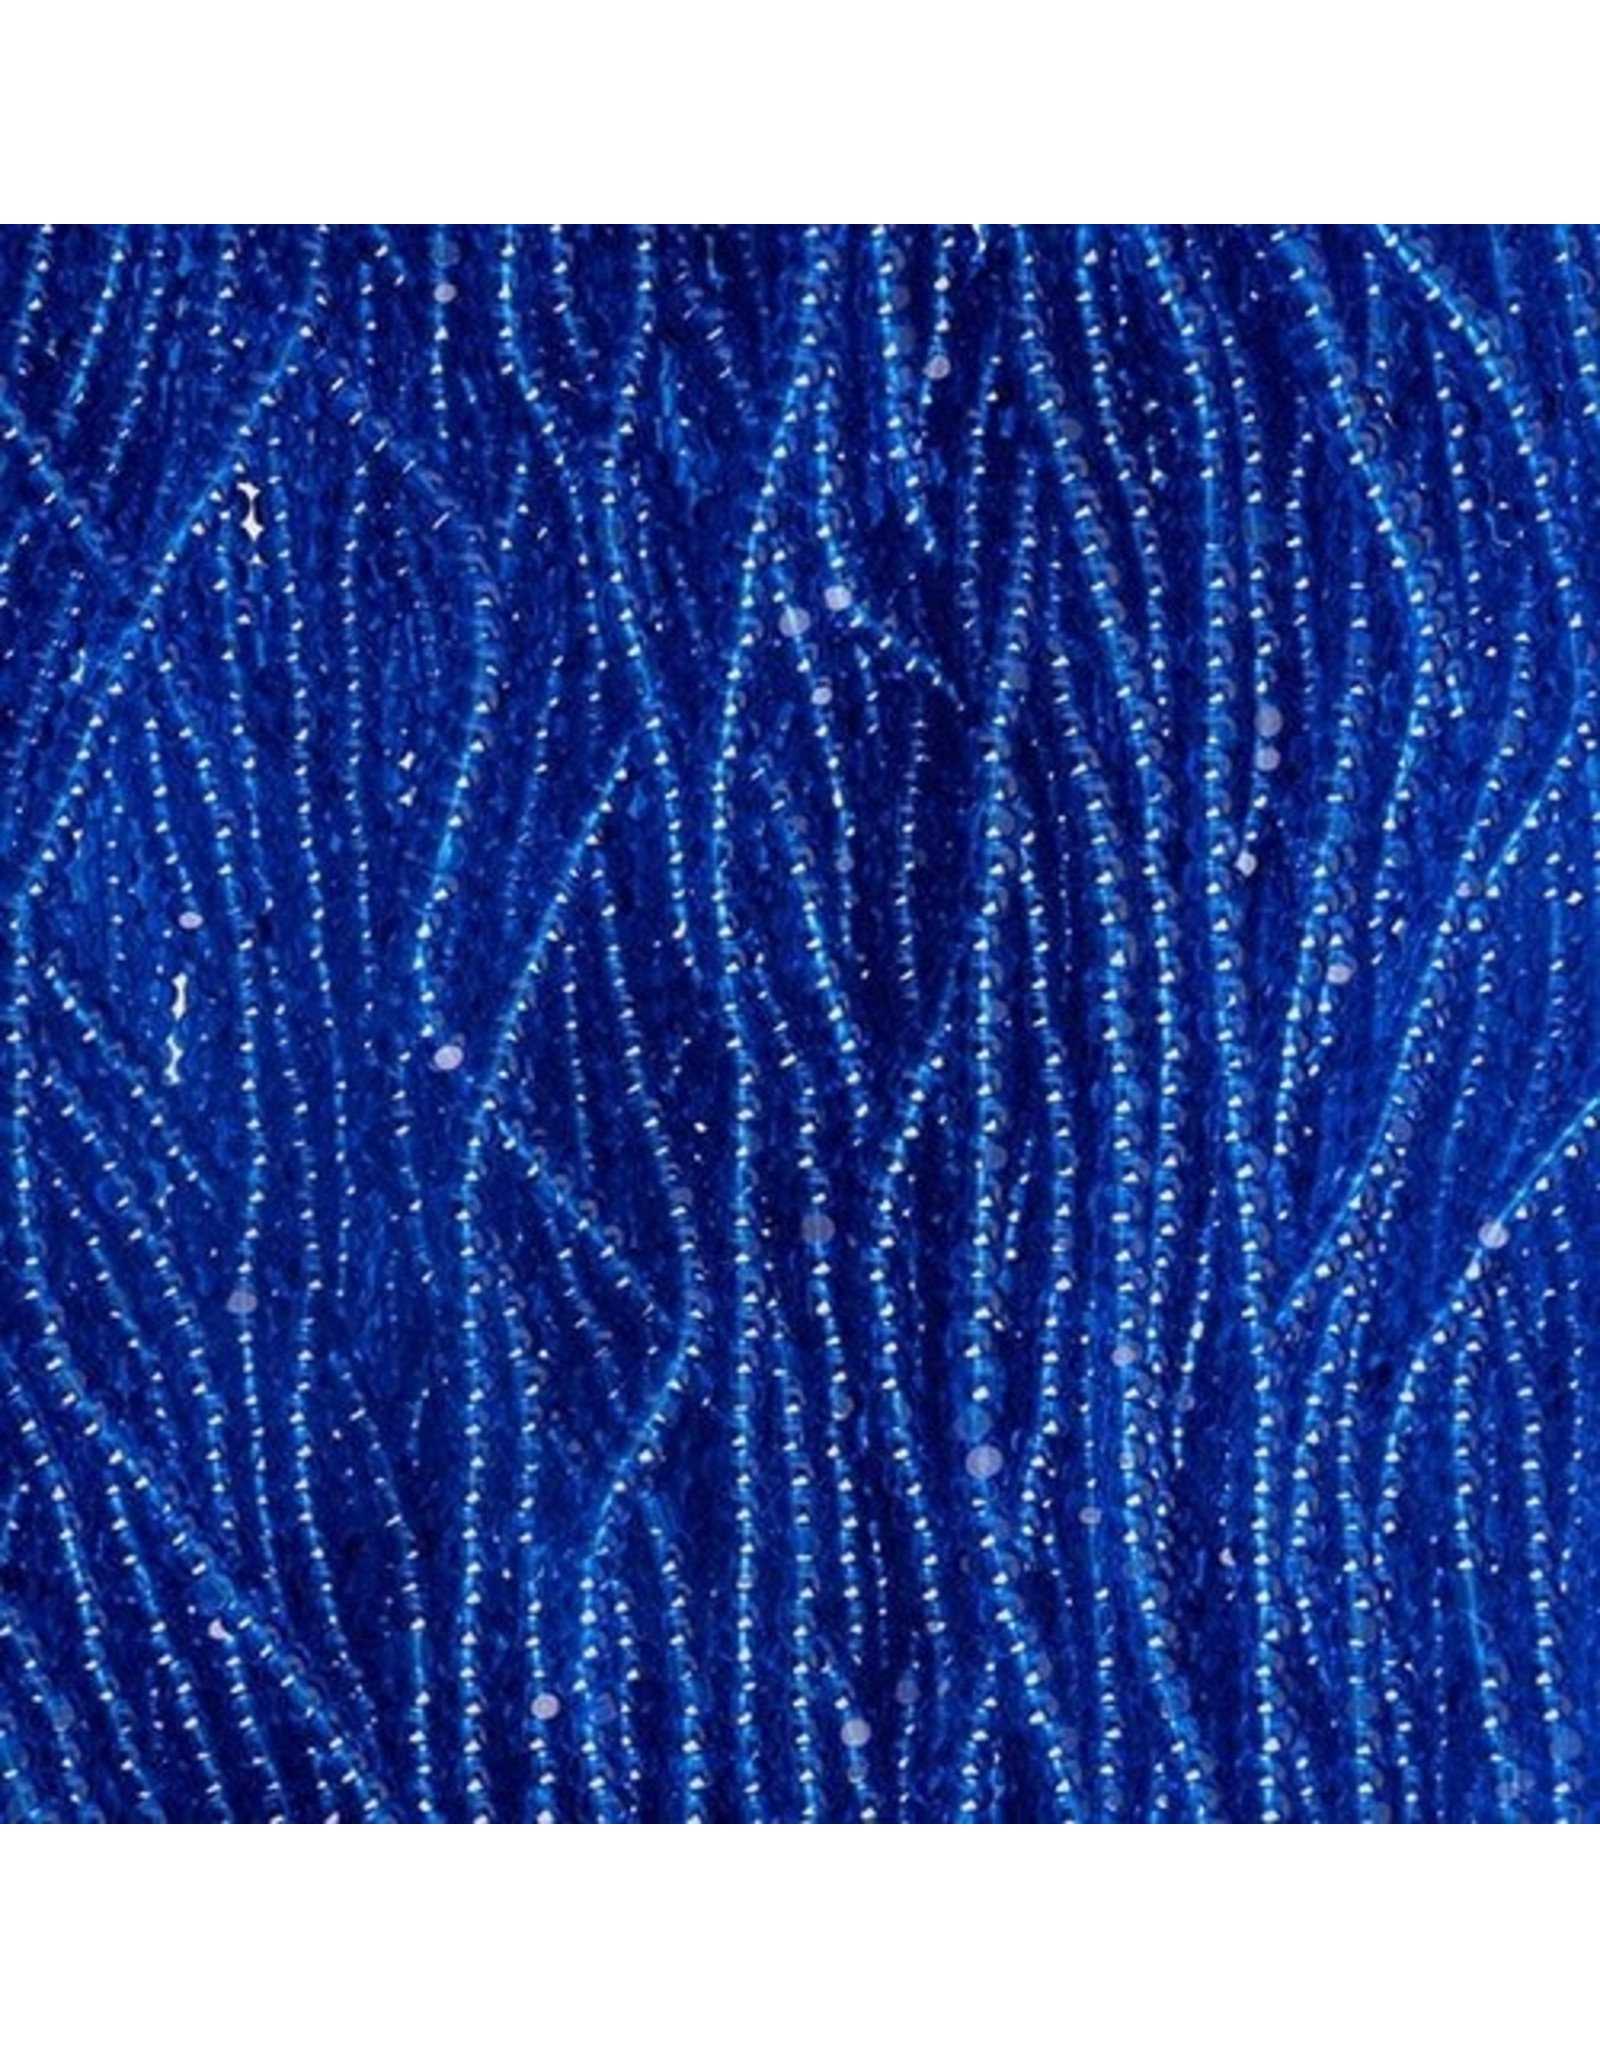 Czech 601015 13/0 Charlotte Cut Seed Hank 12g  Transparent Medium Blue